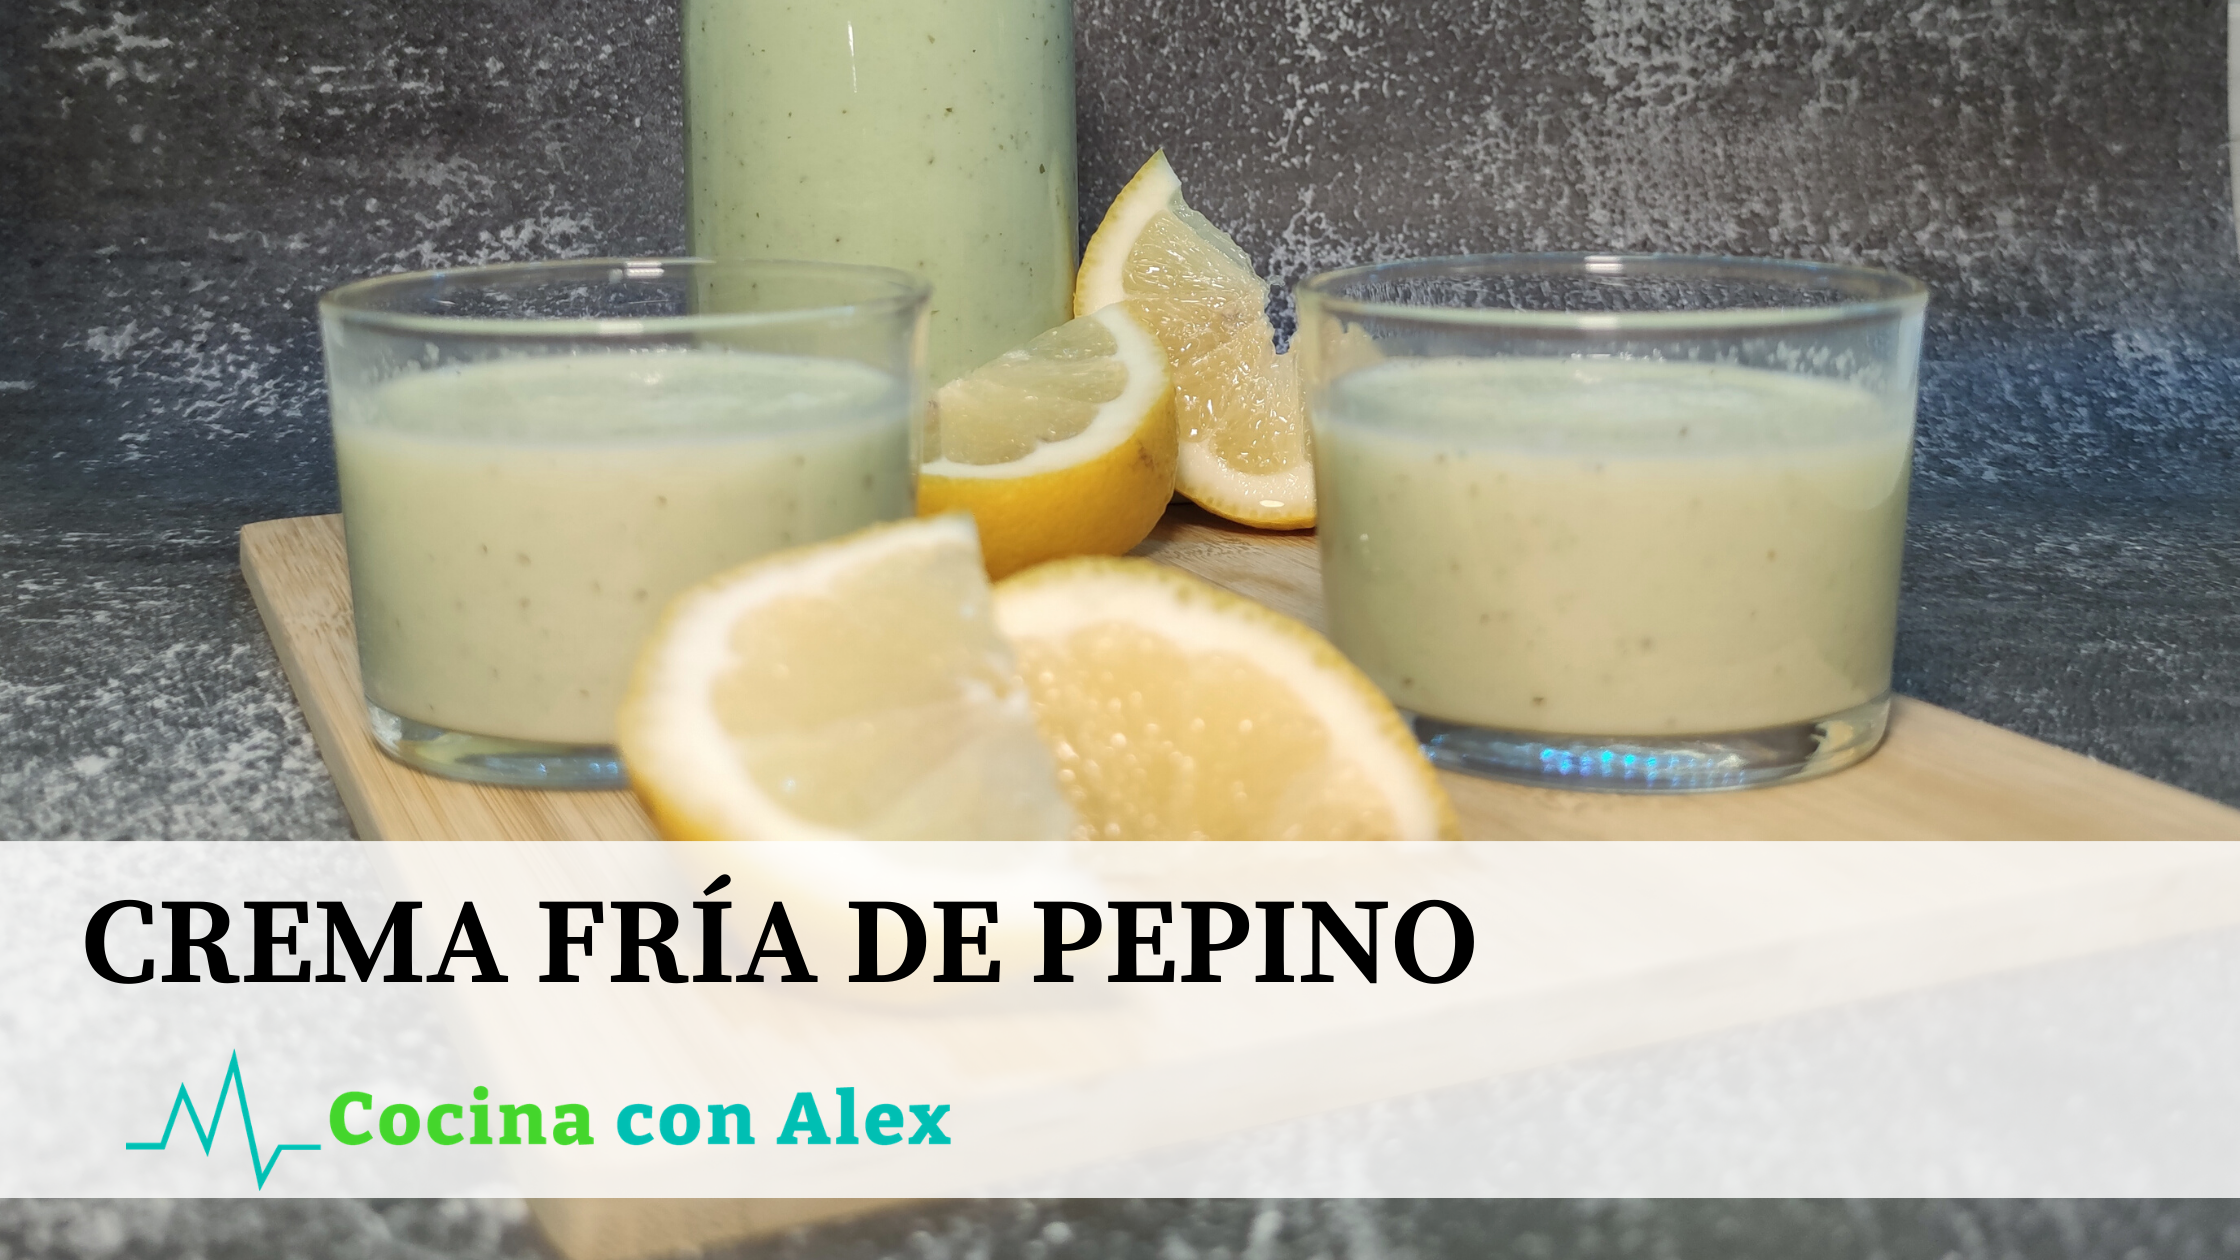 Crema fría de pepino by Alex Arroyo Fit. Perfecta crema fría para este verano seguir cuidando de tu cuerpo y la dieta, con un sabor increíble.